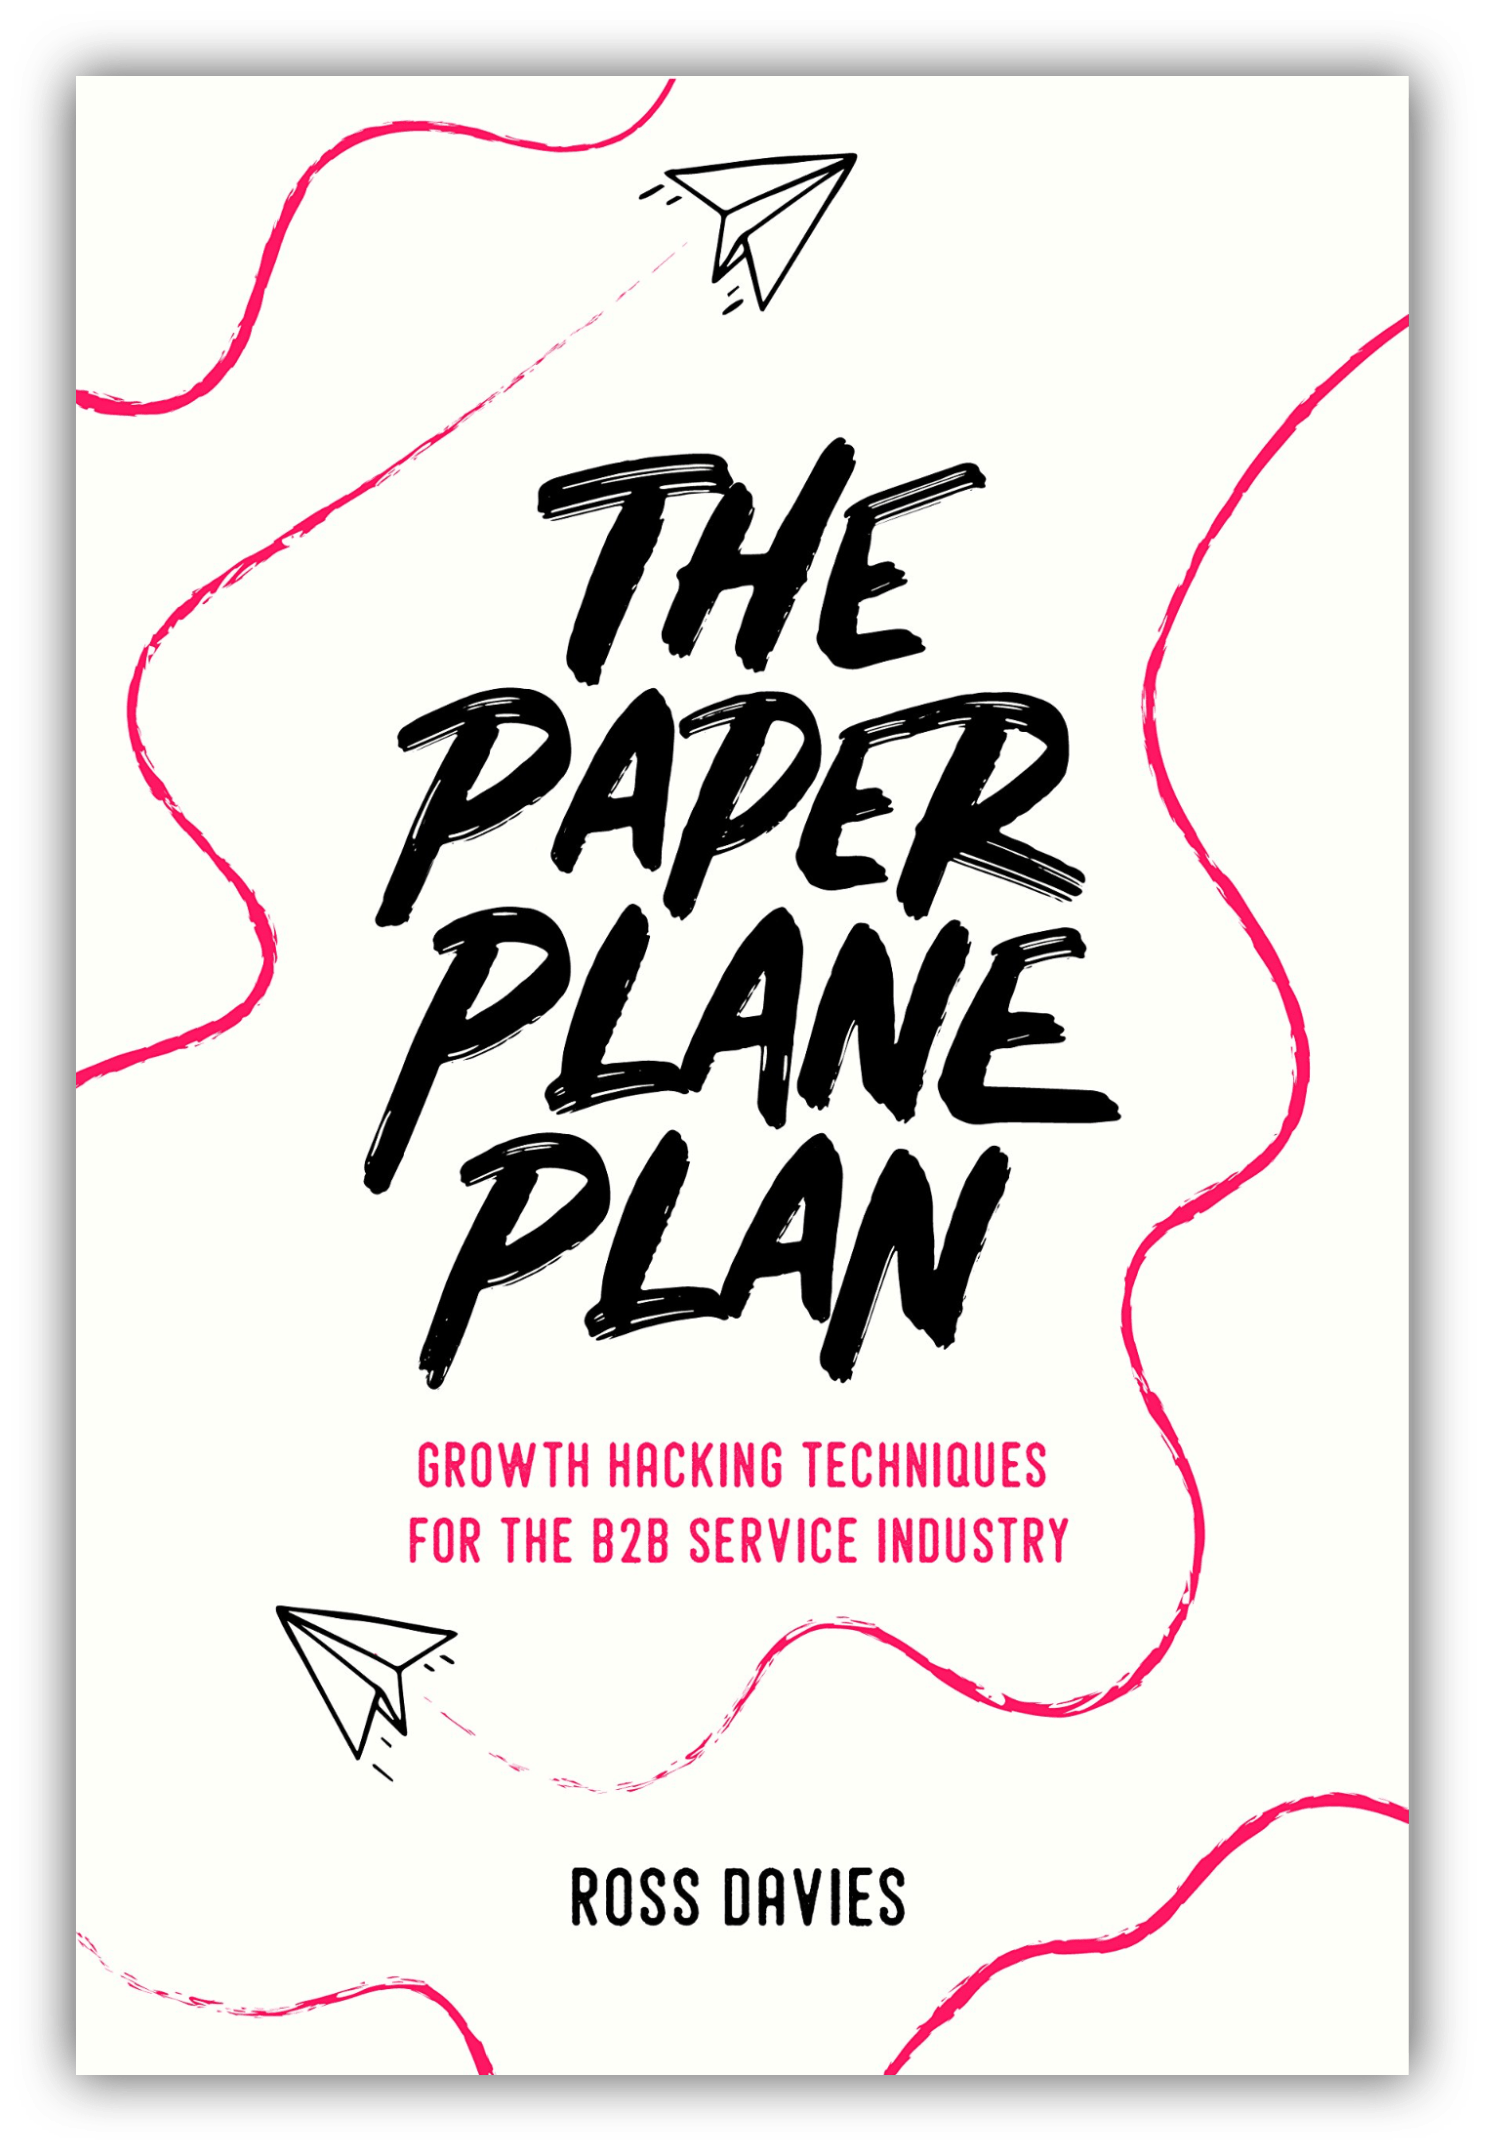 the paper plane plan